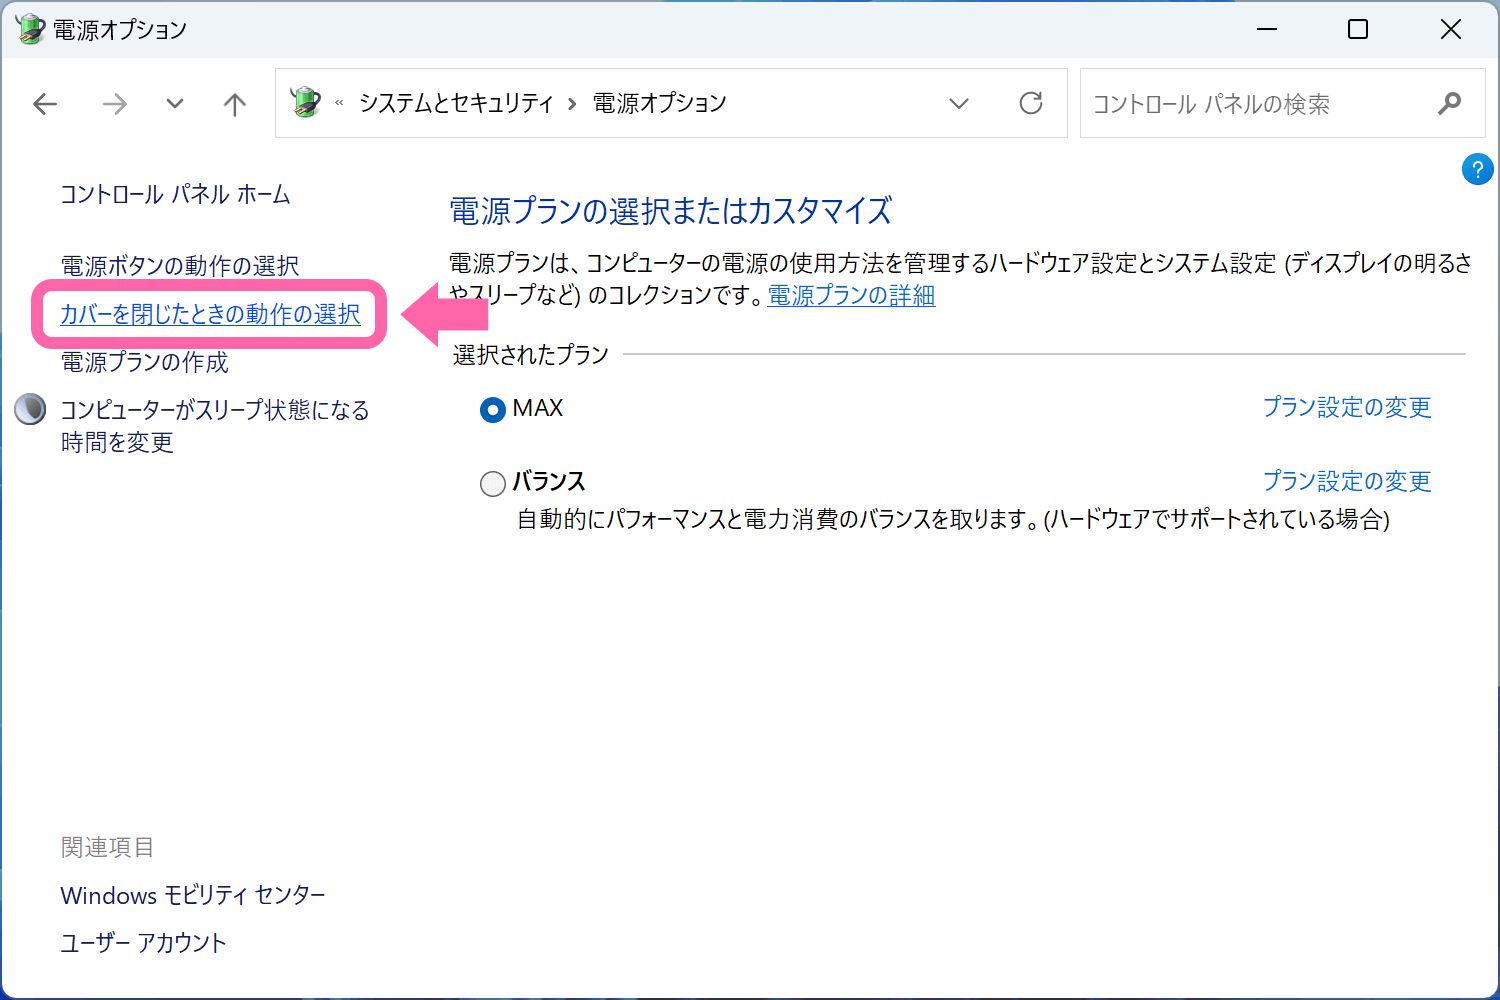 Windows 11 [カバーを閉じたときの動作の選択] をクリック